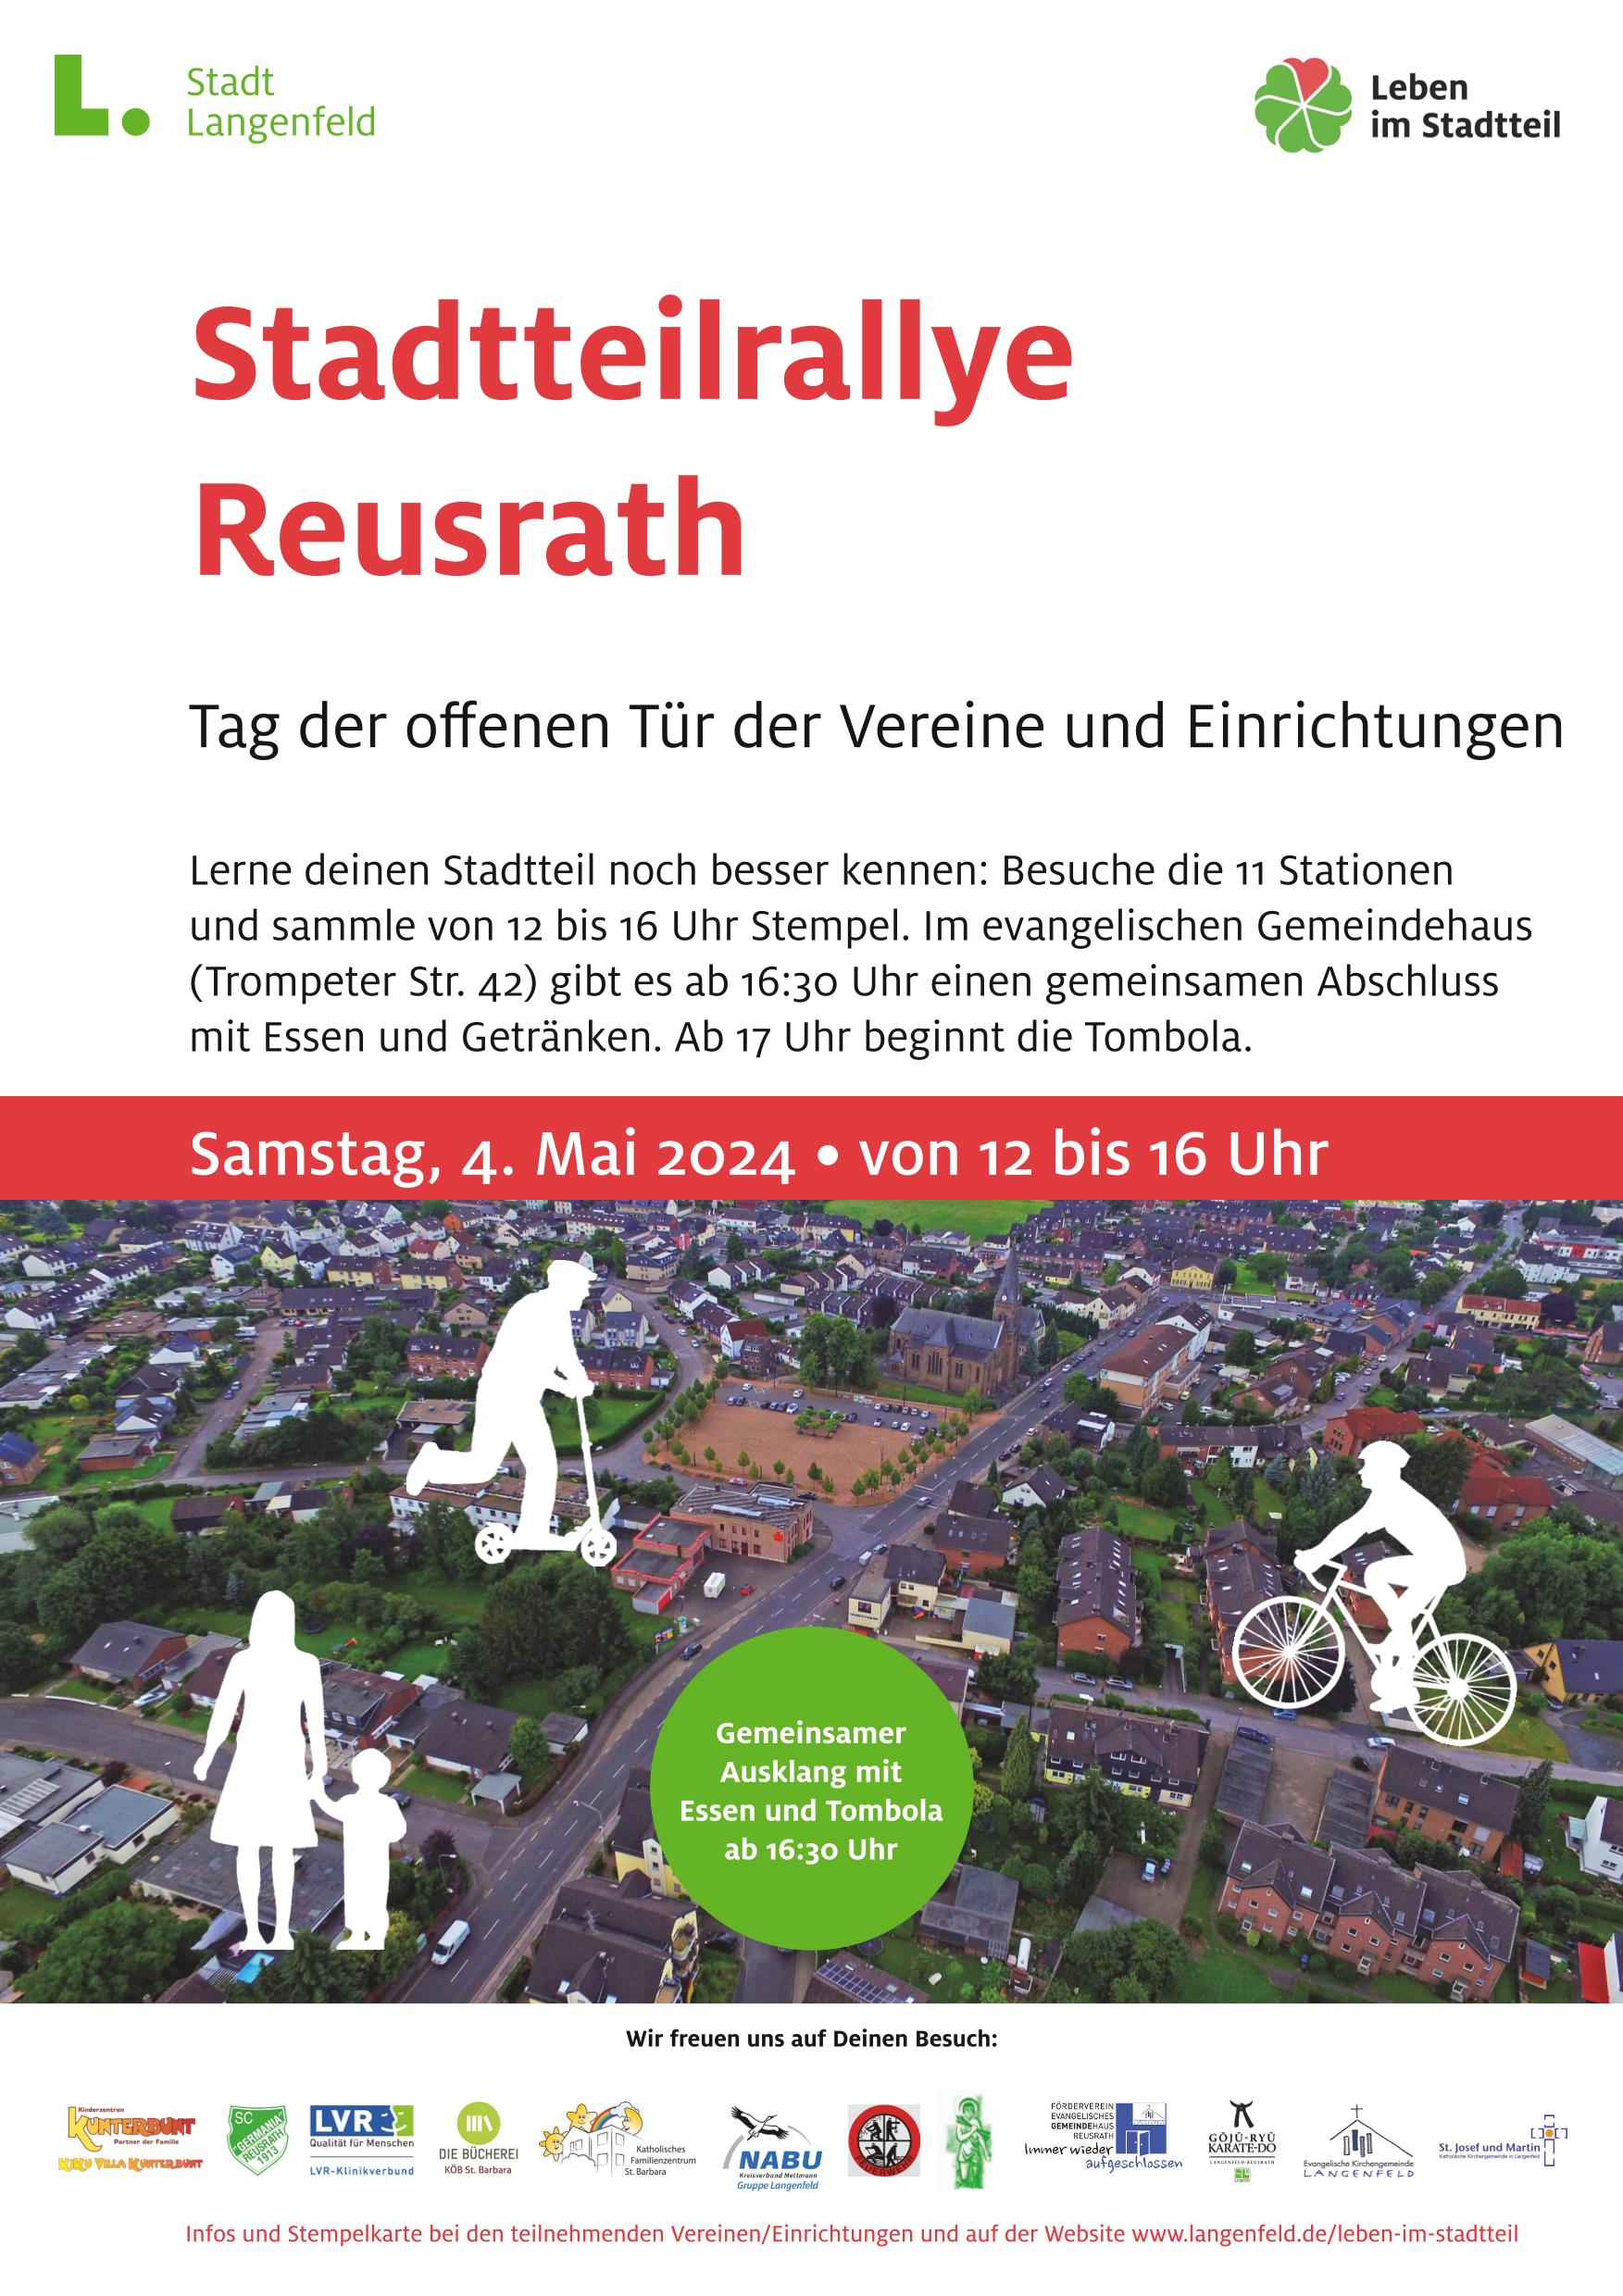 Teilnahme an der Stadtteilrallye Langenfeld Reusrath